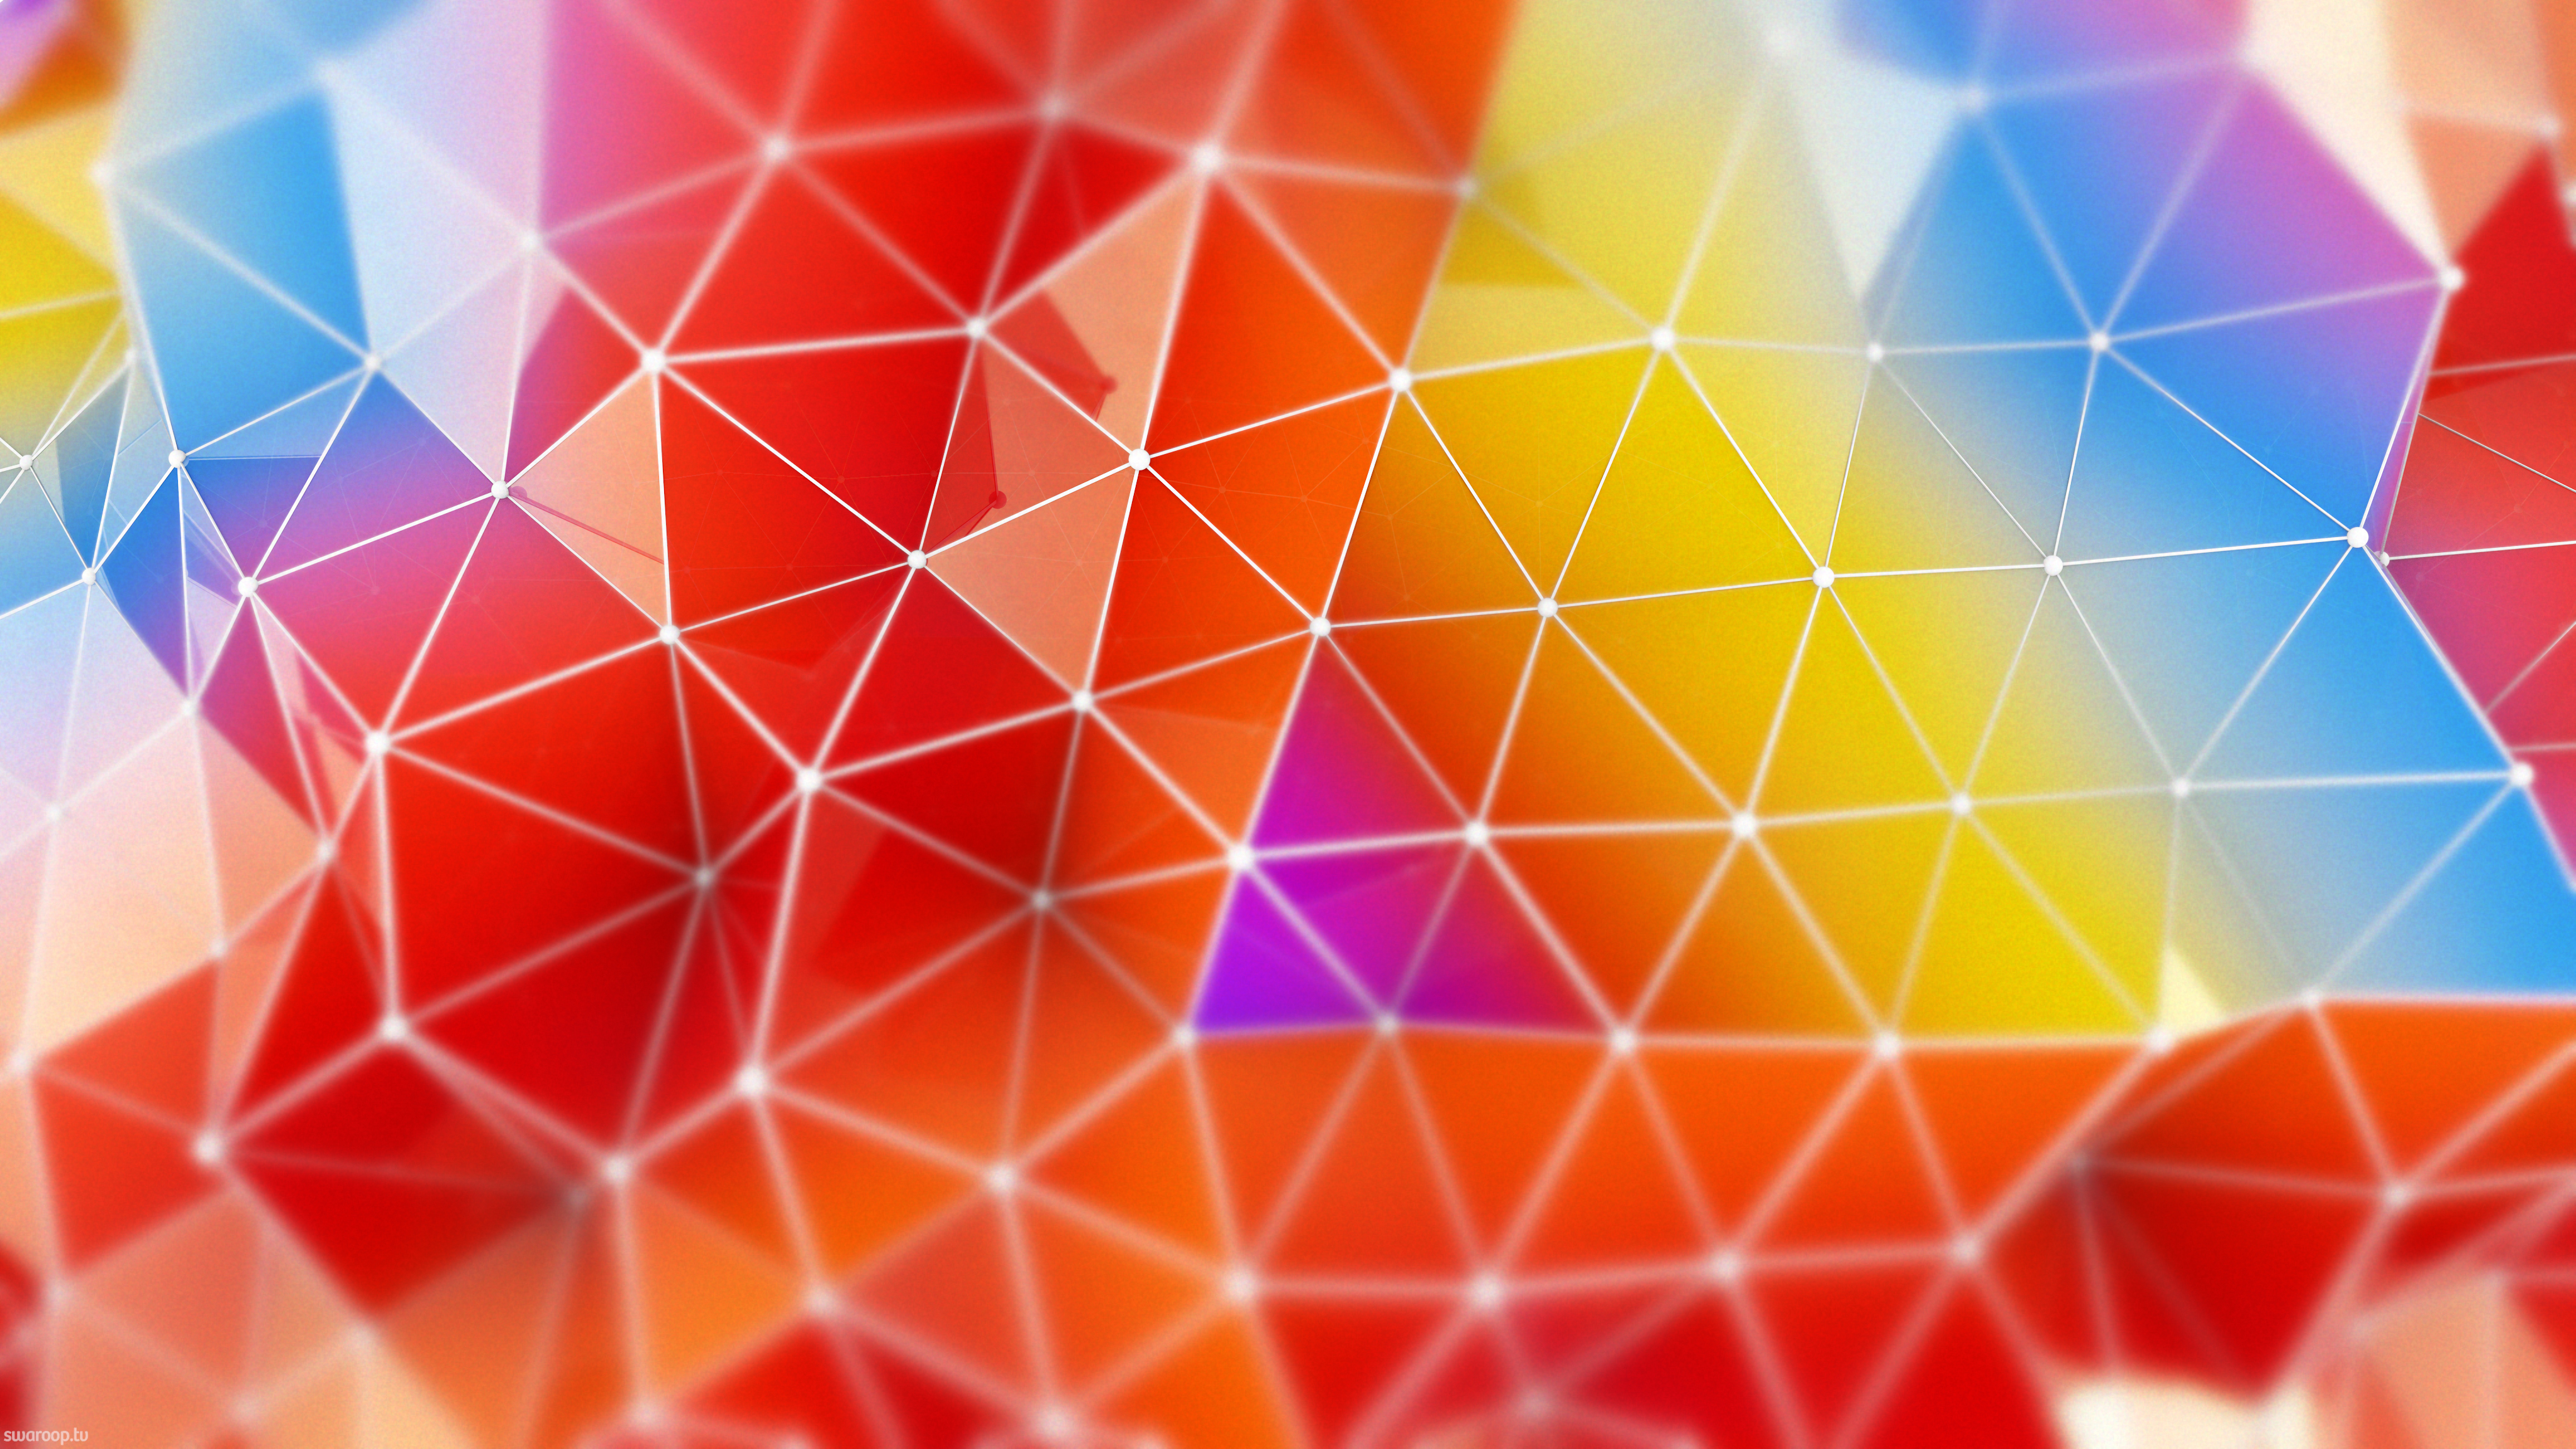 43+] Colorful 4K Wallpaper - WallpaperSafari